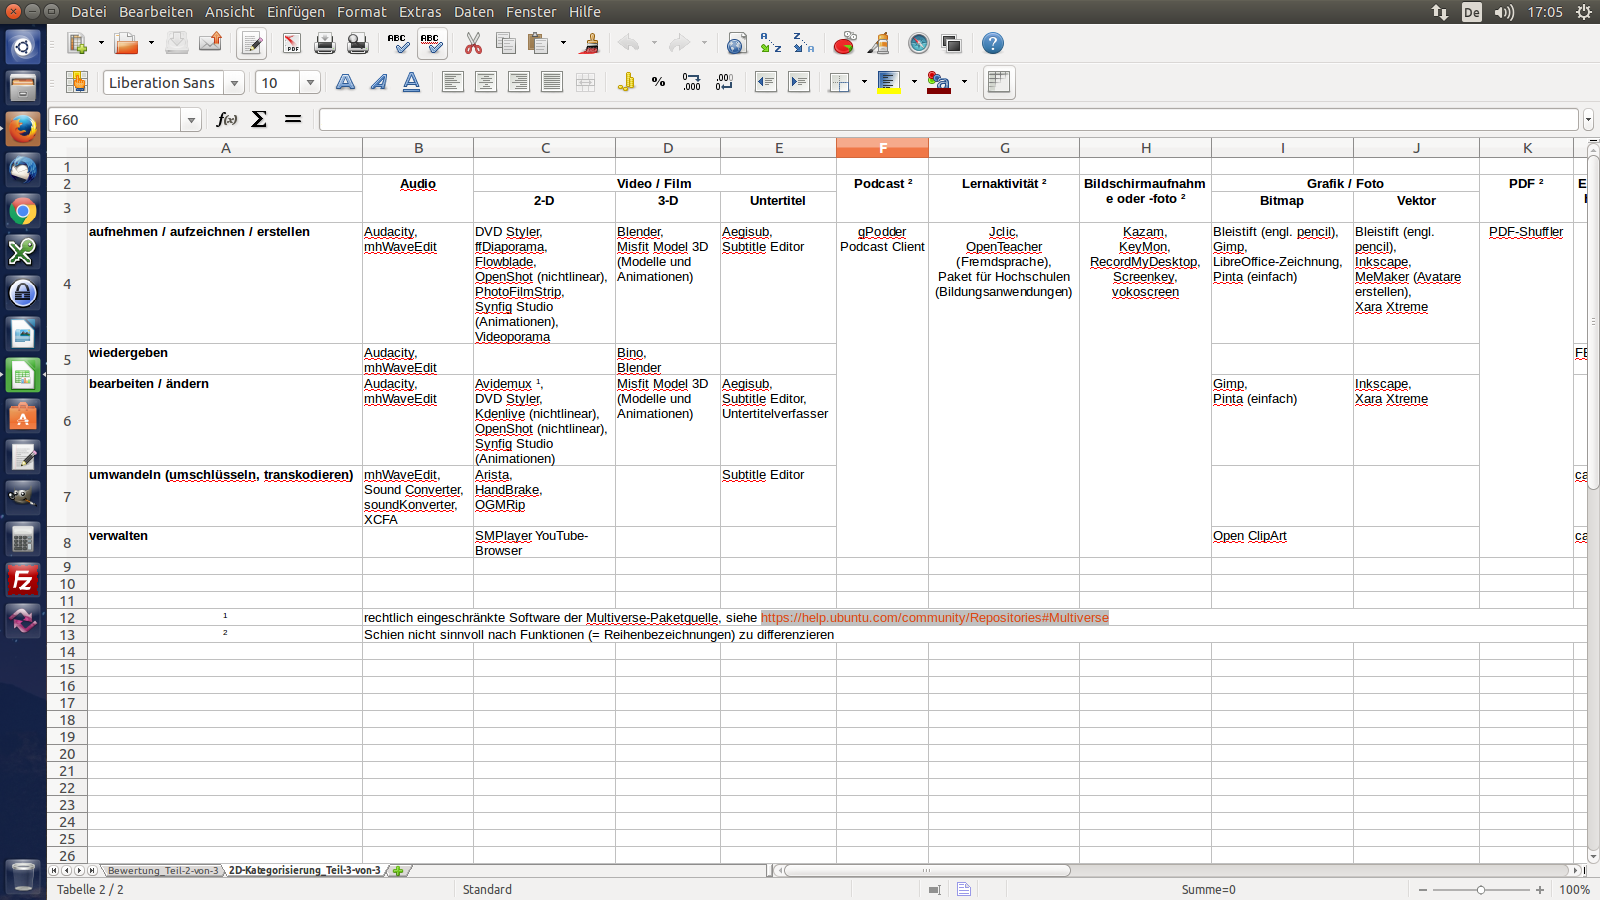 Bildschirmfoto des Beginns der Tabelle mit der zweidimensionalen Übersicht über die E-Learning-Programme unter Ubuntu Linux Desktop 14.04 LTS